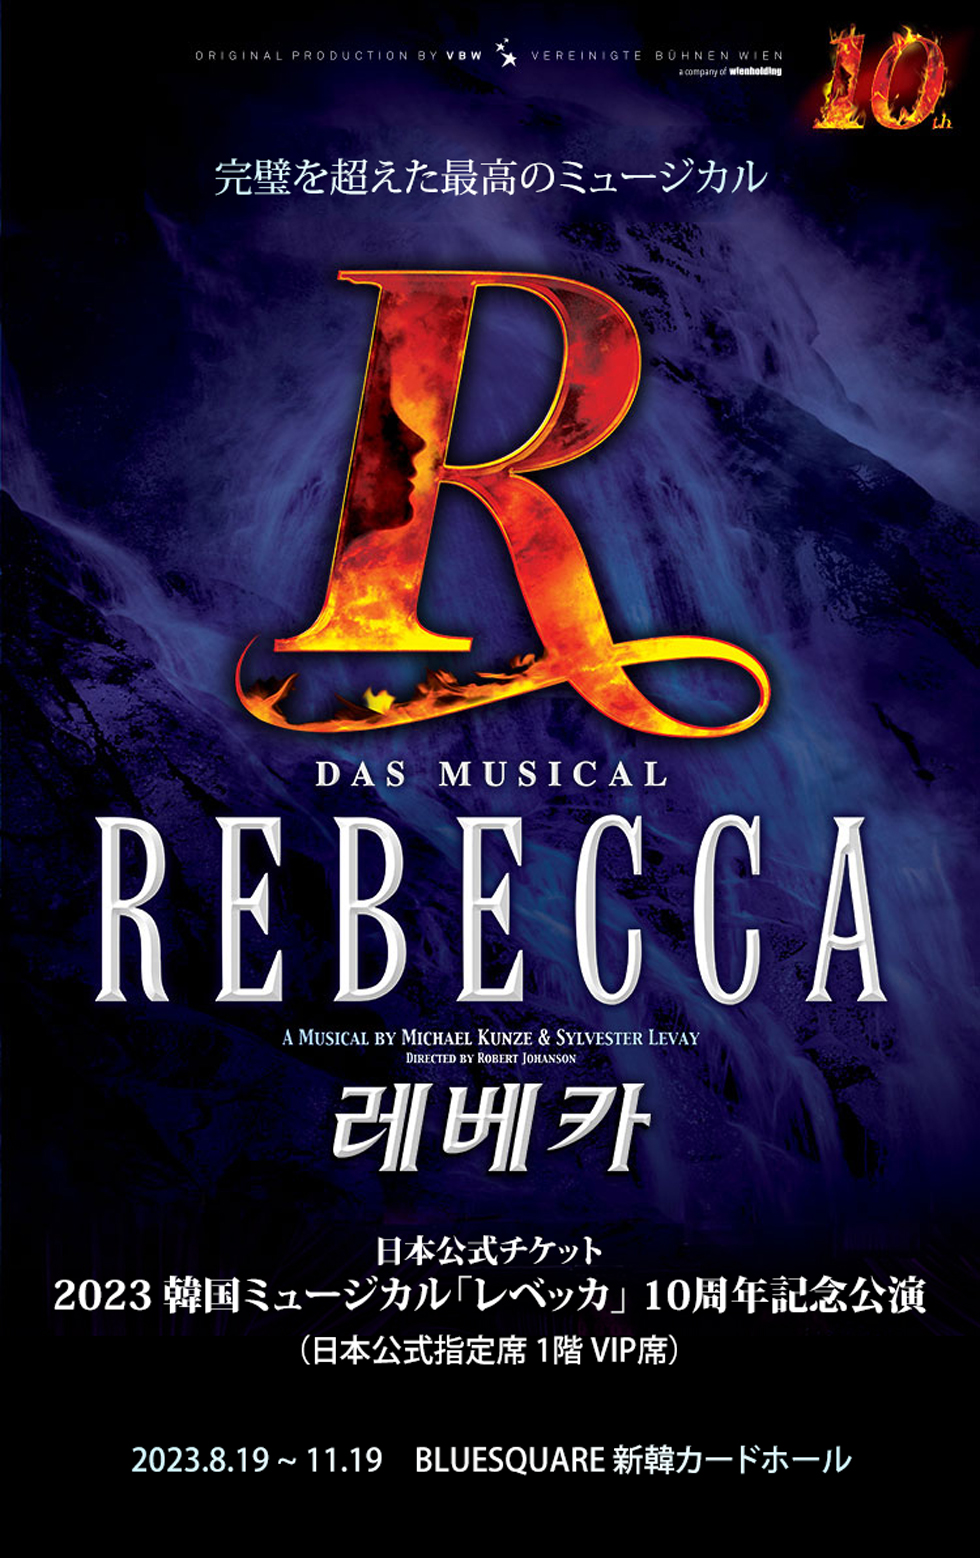 【日本公式】2023 韓国ミュージカル「レベッカ」10周年記念公演 日本公式チケット (1階 VIP席)